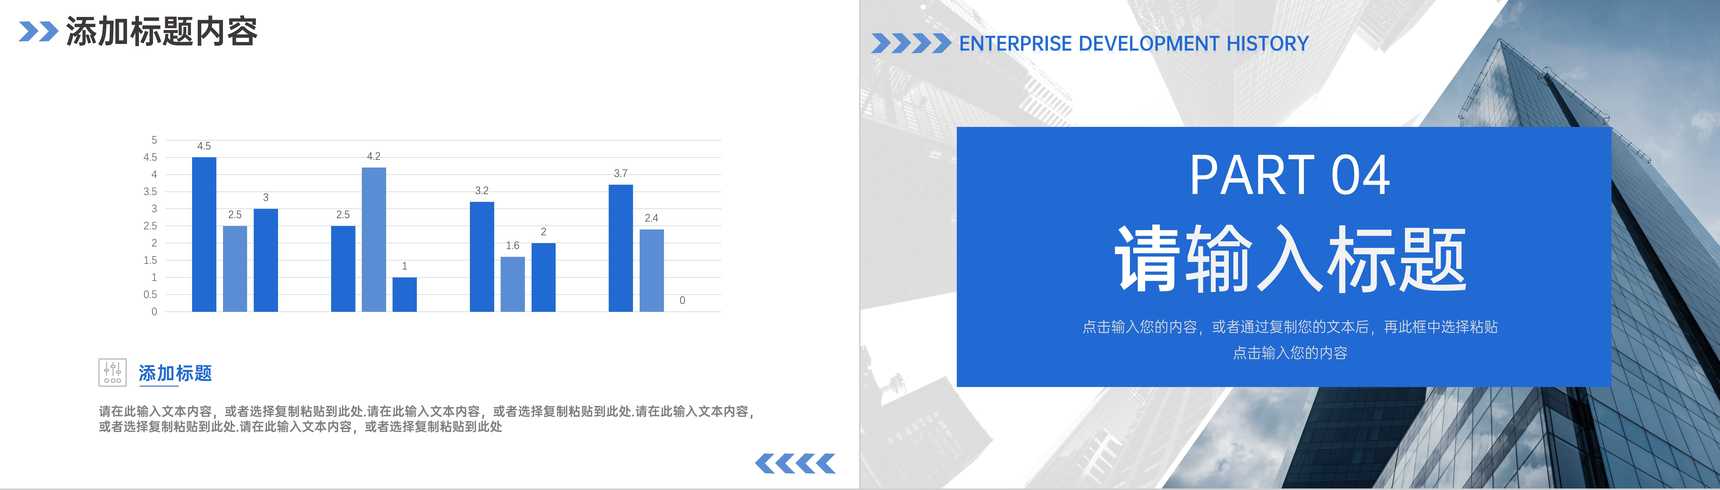 蓝色大气企业发展历程公司情况介绍PPT模板-8